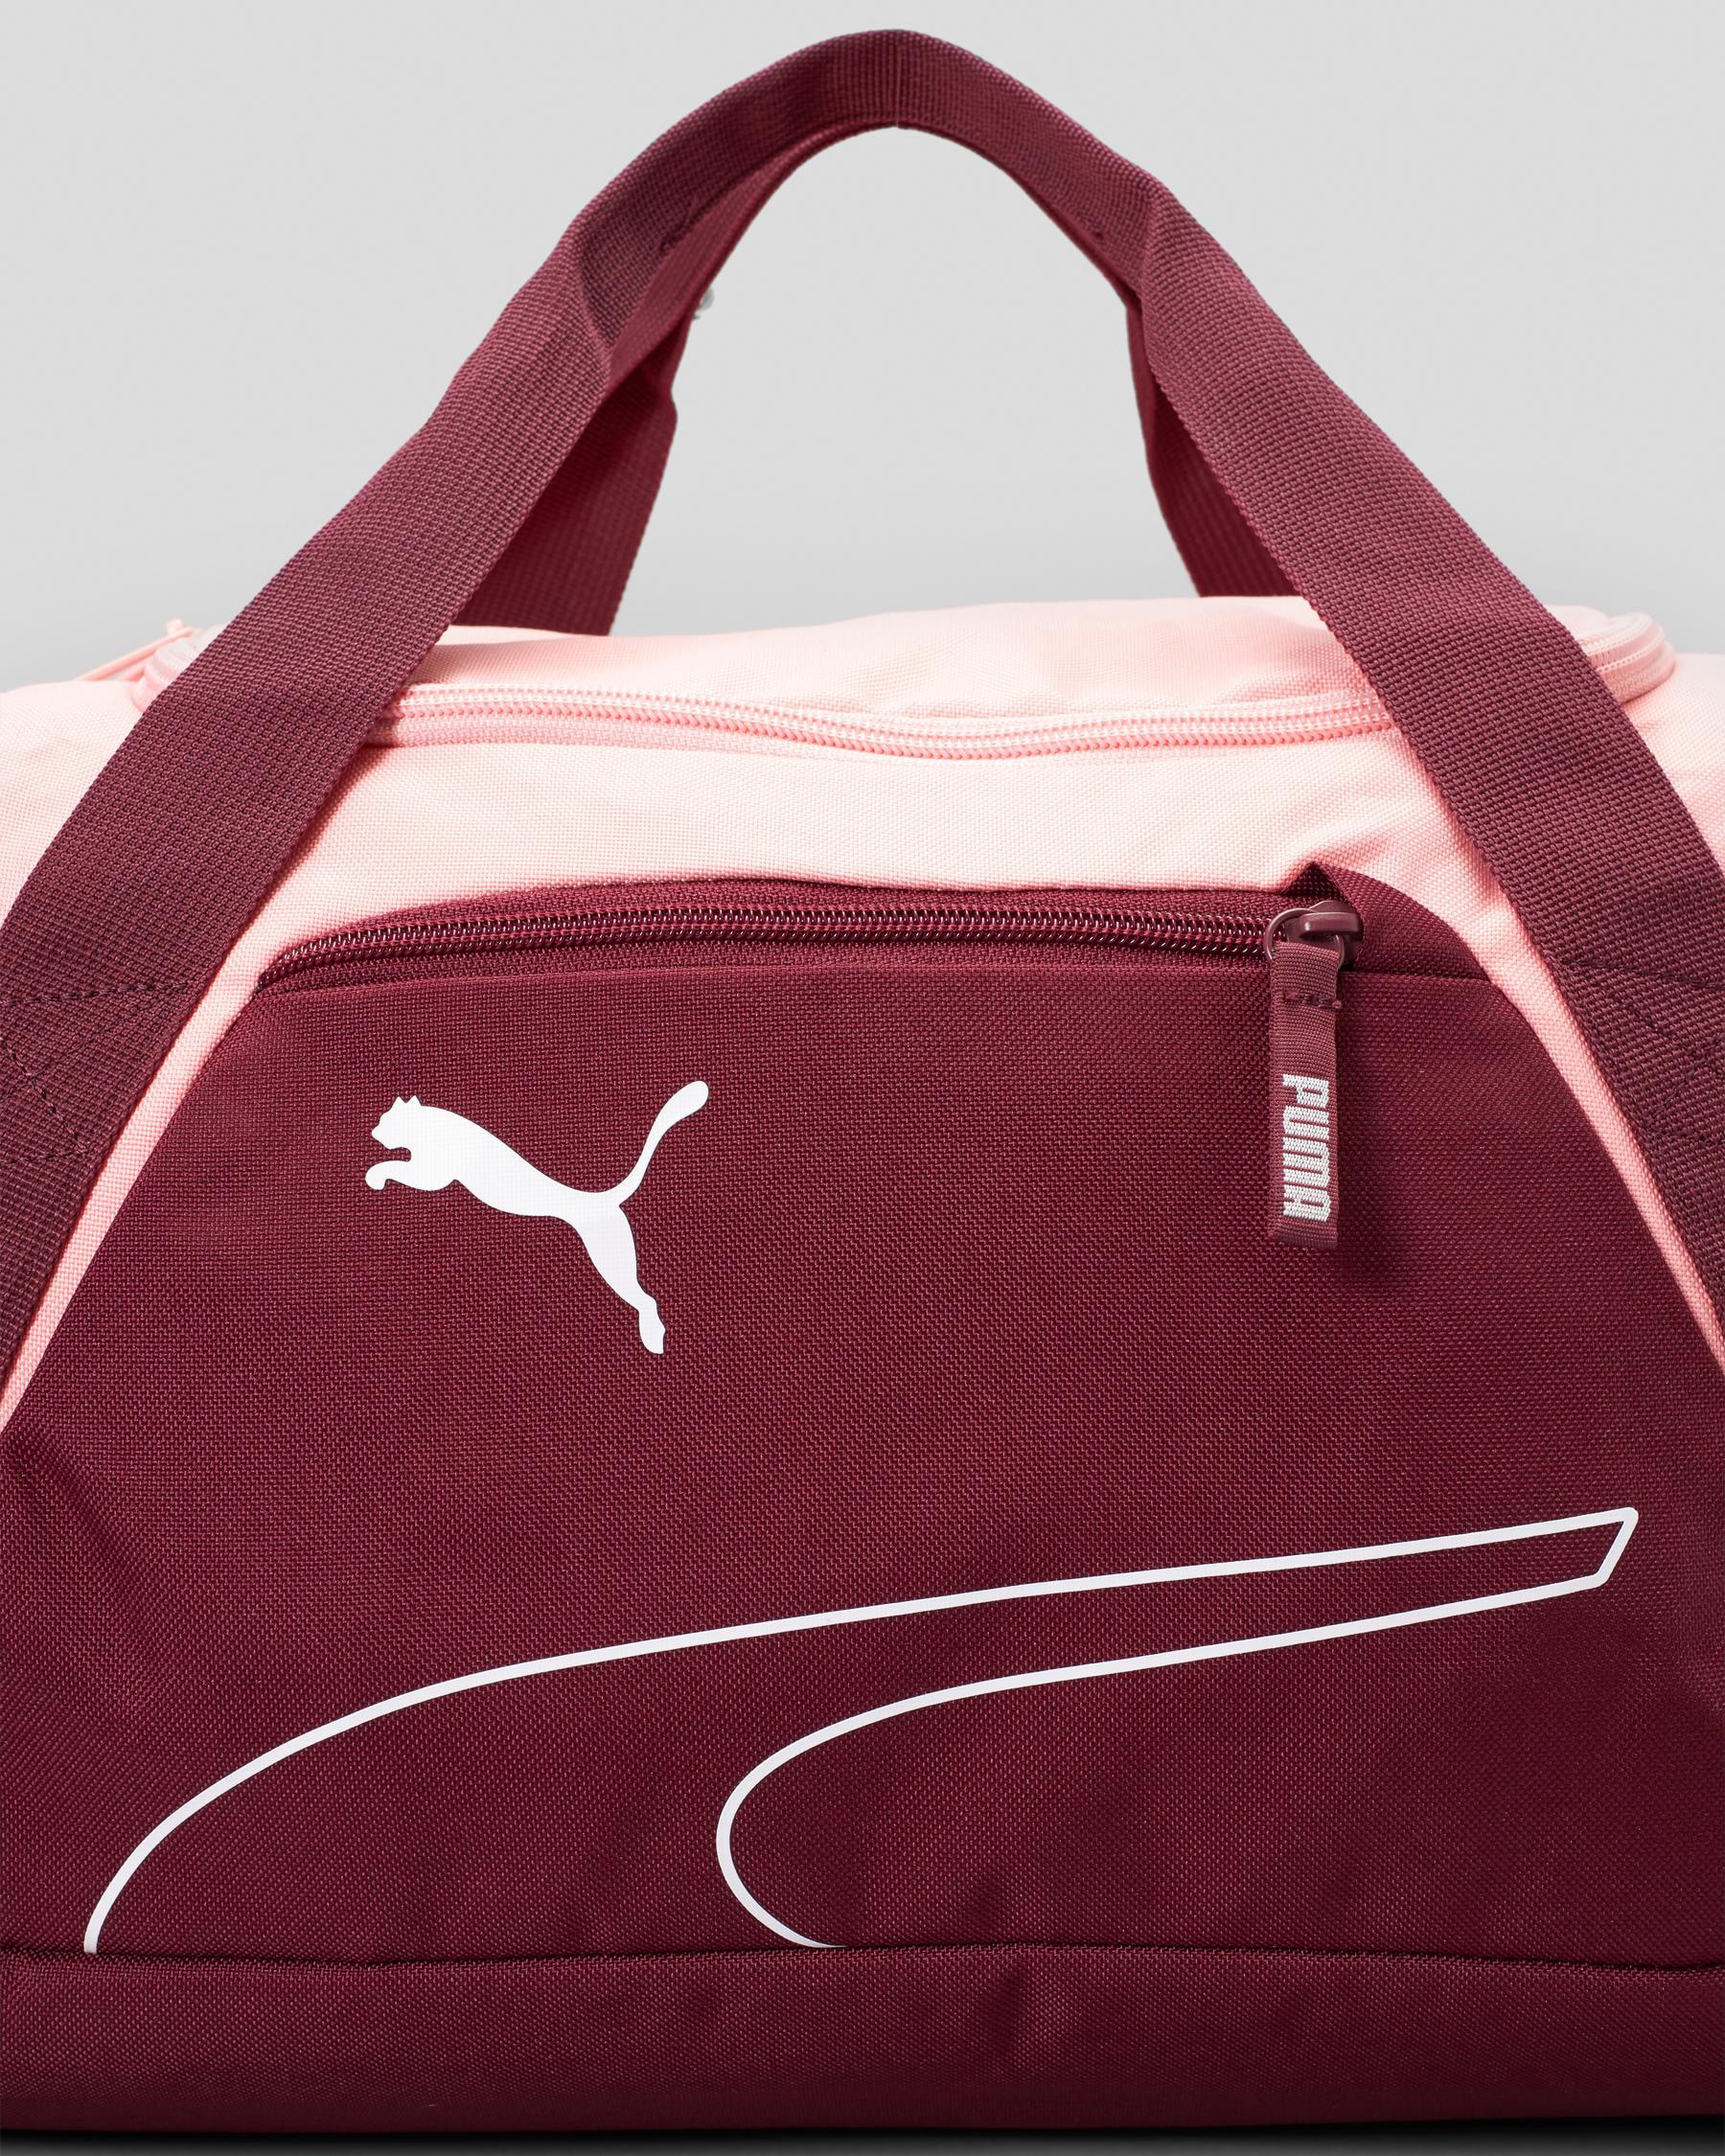 Puma Fundamentals Gym Bag In Dark Jasper/peach Smoothie - Fast Shipping ...